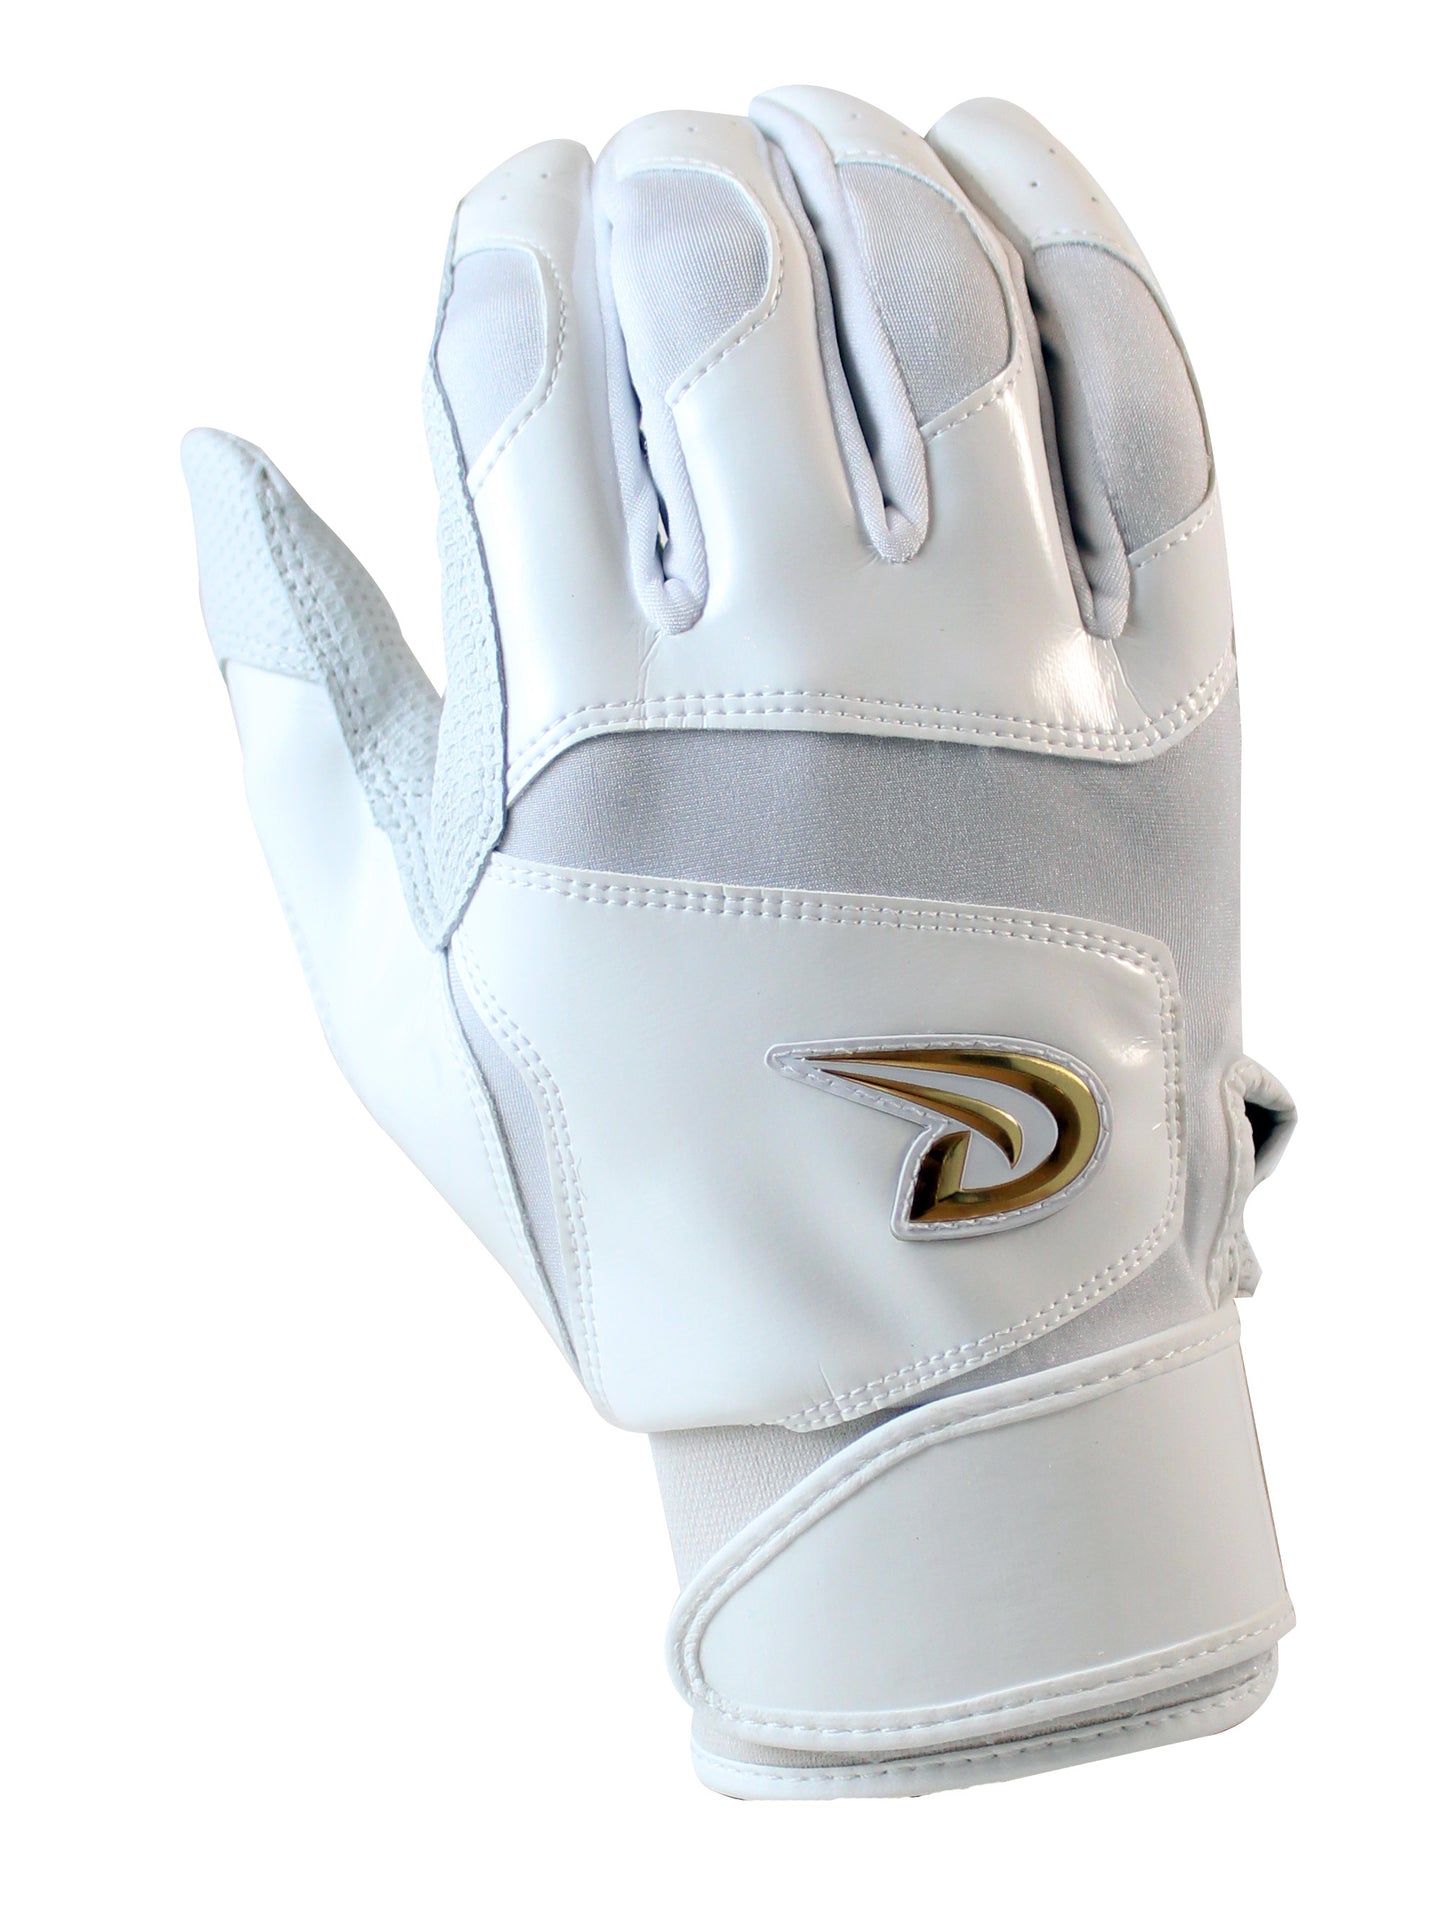 Dux Sports Batting Gloves For baseball white front